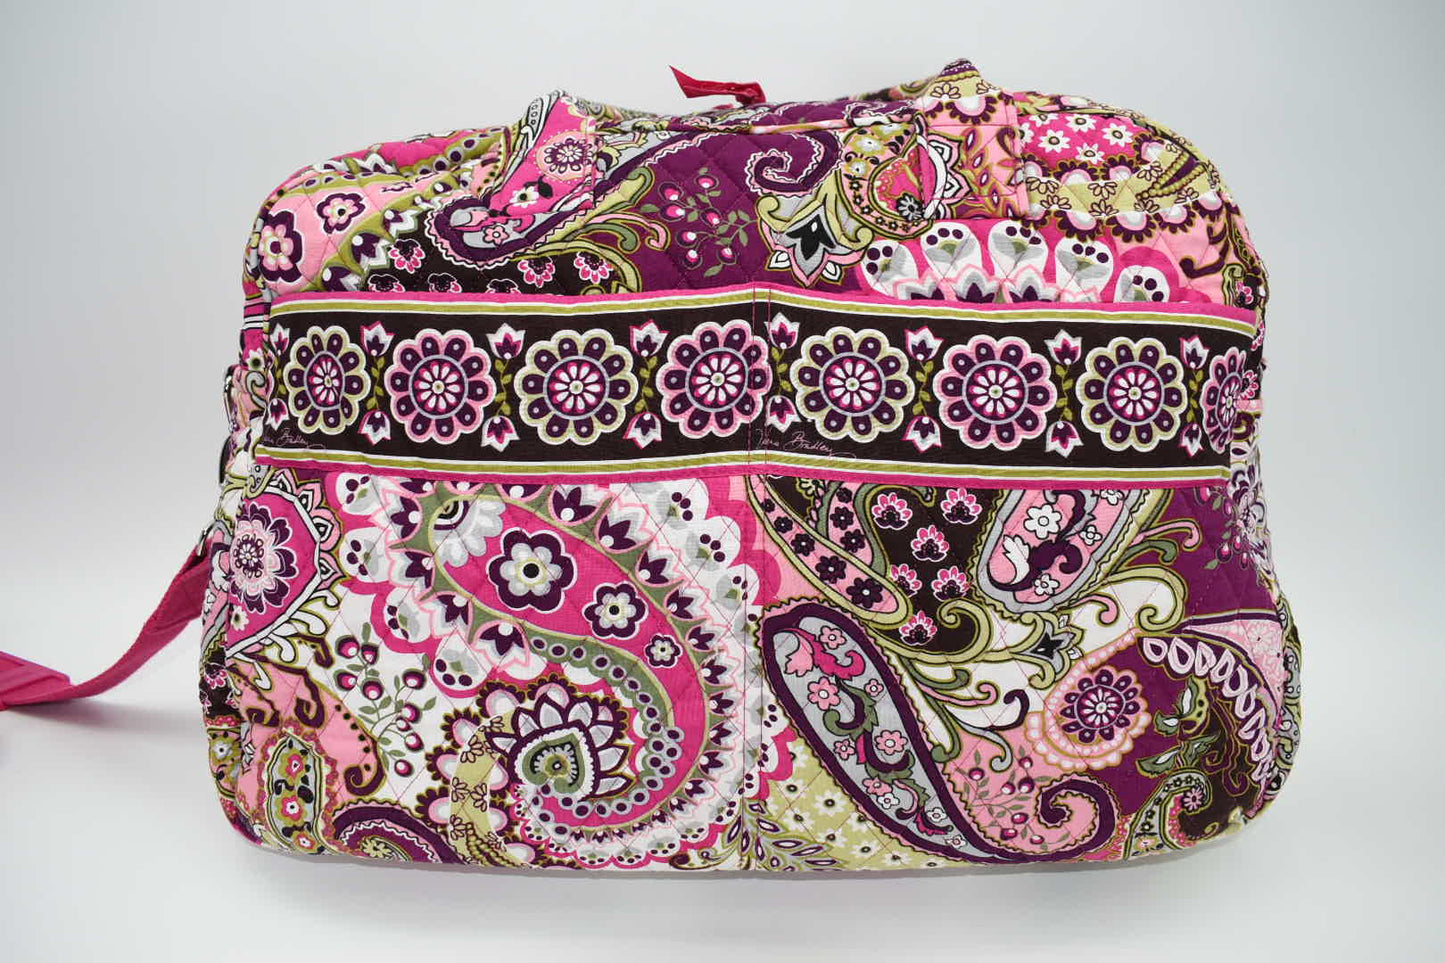 Vera Bradley Weekender Travel Bag  in "Very Berry Paisley" Pattern